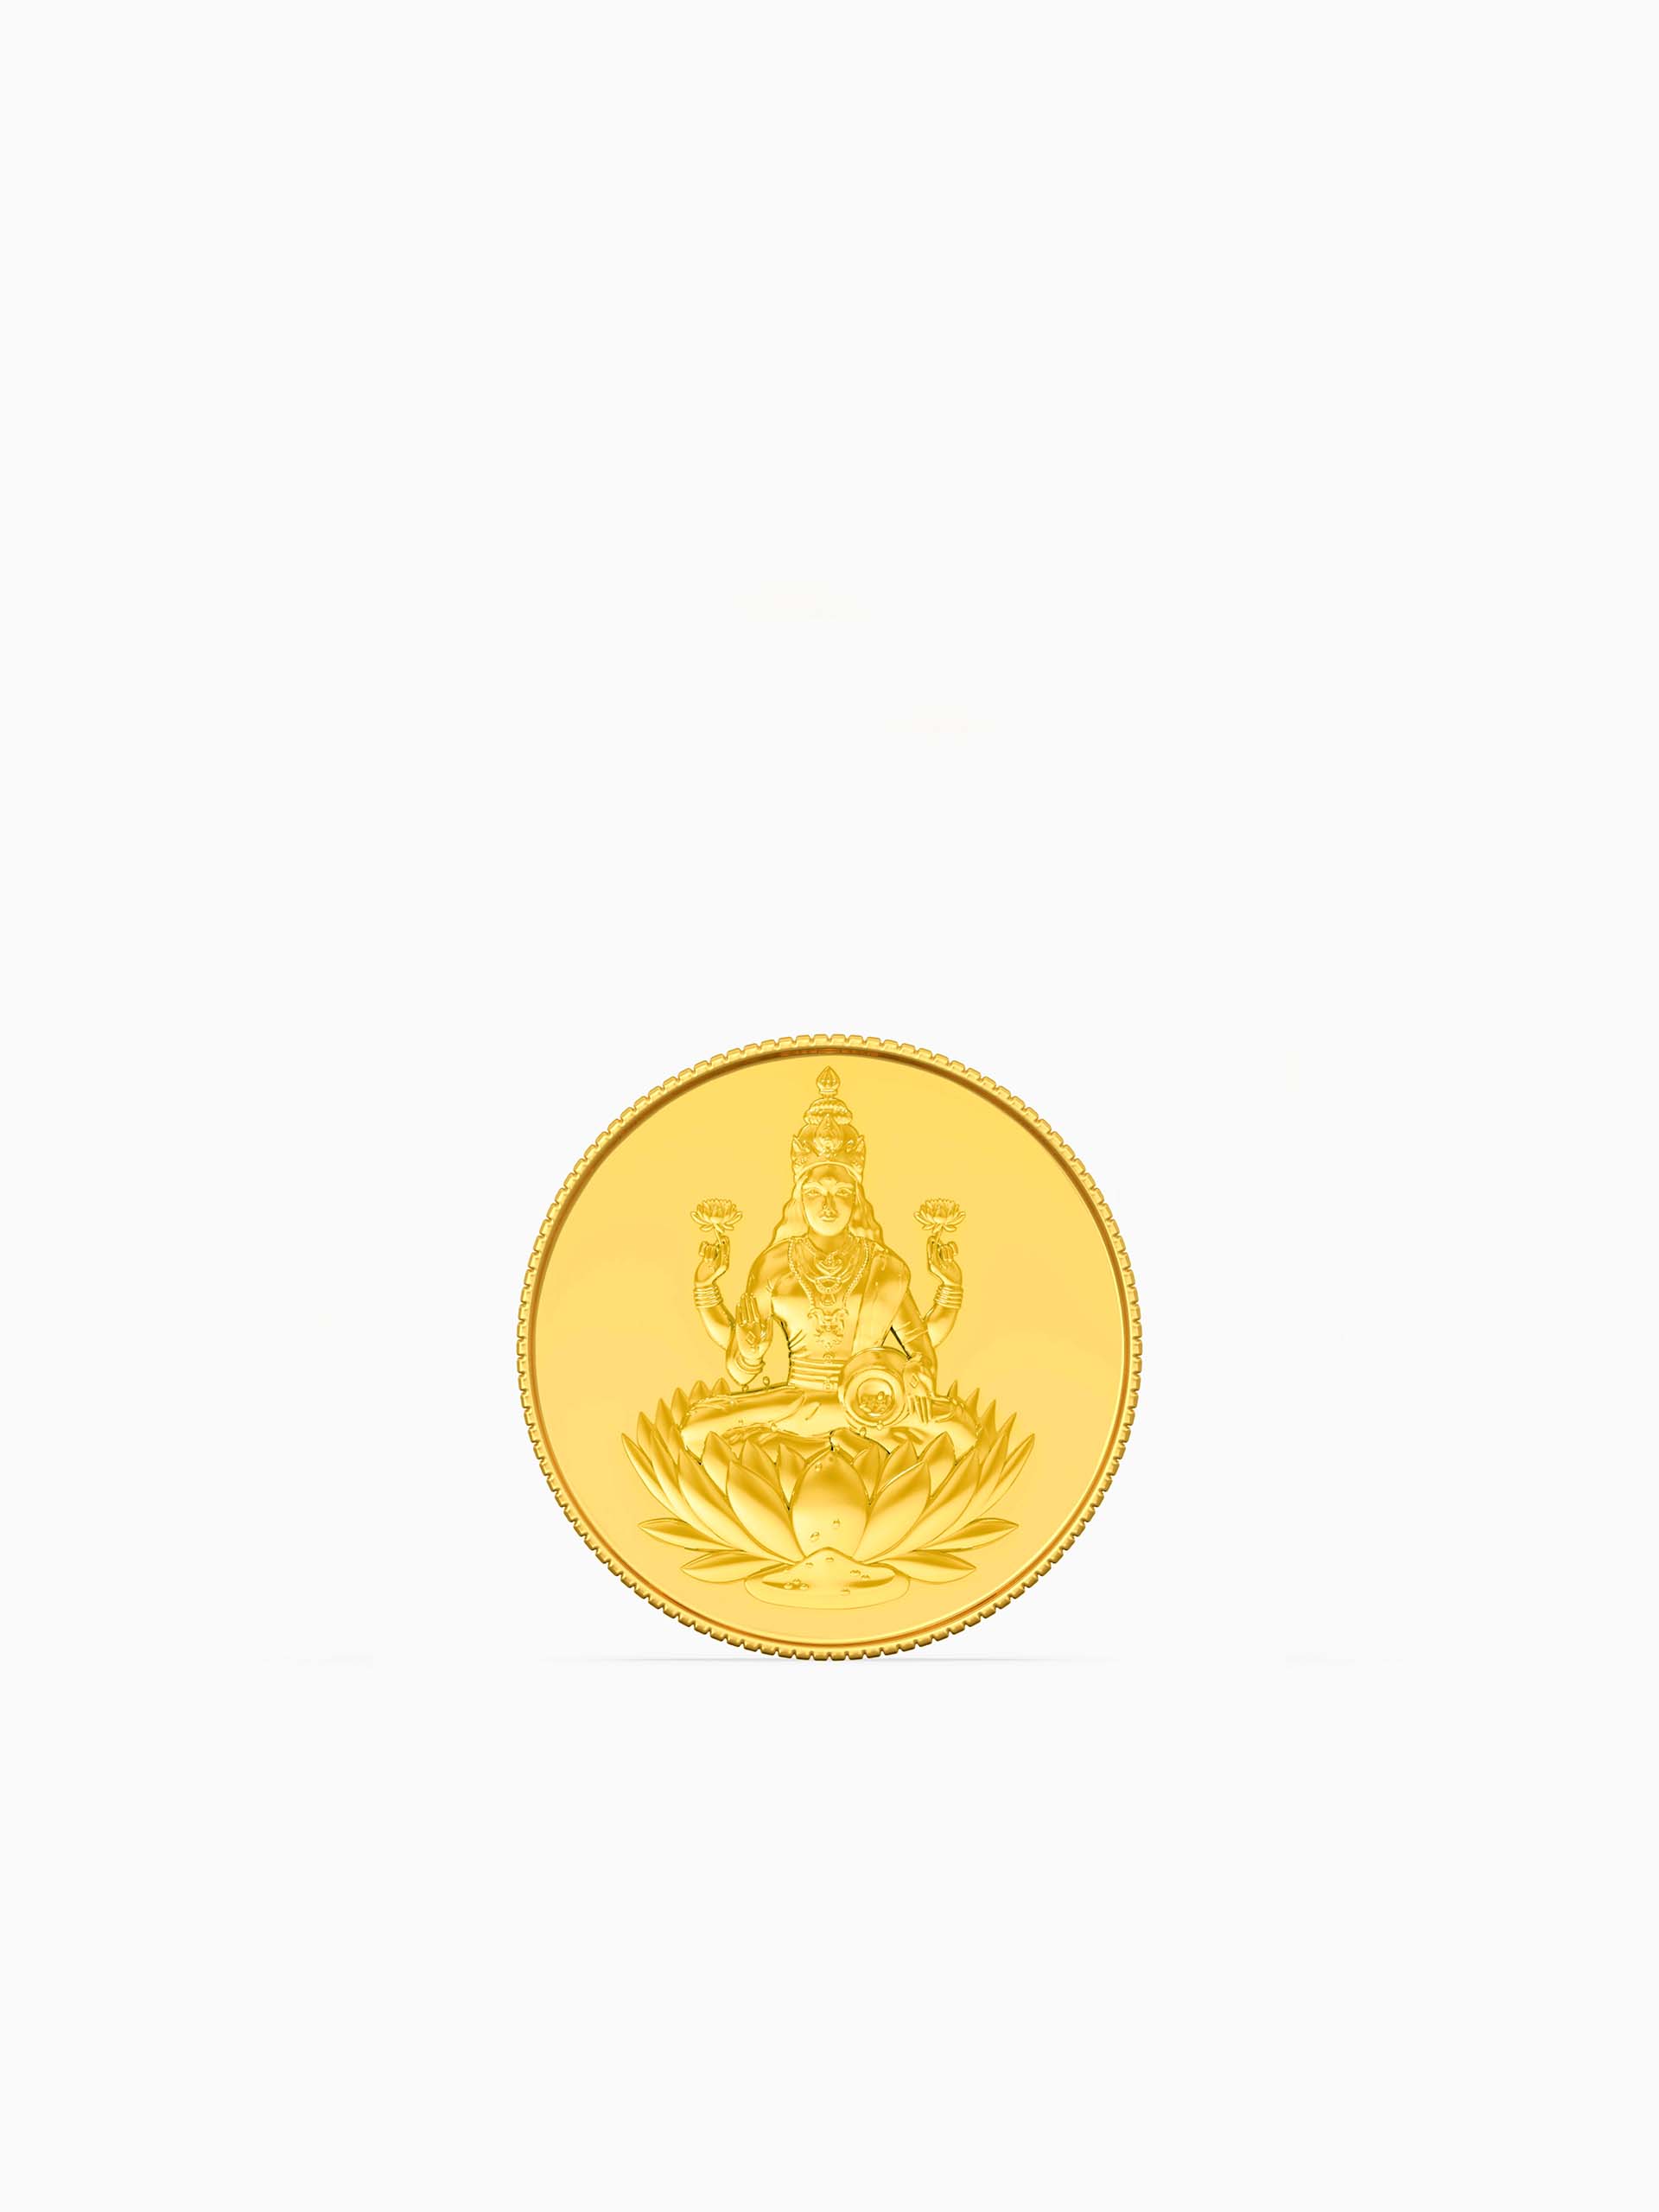 1 Gram 995 Purity Goddess Laxmi Gold Coin - Zest Mélange 